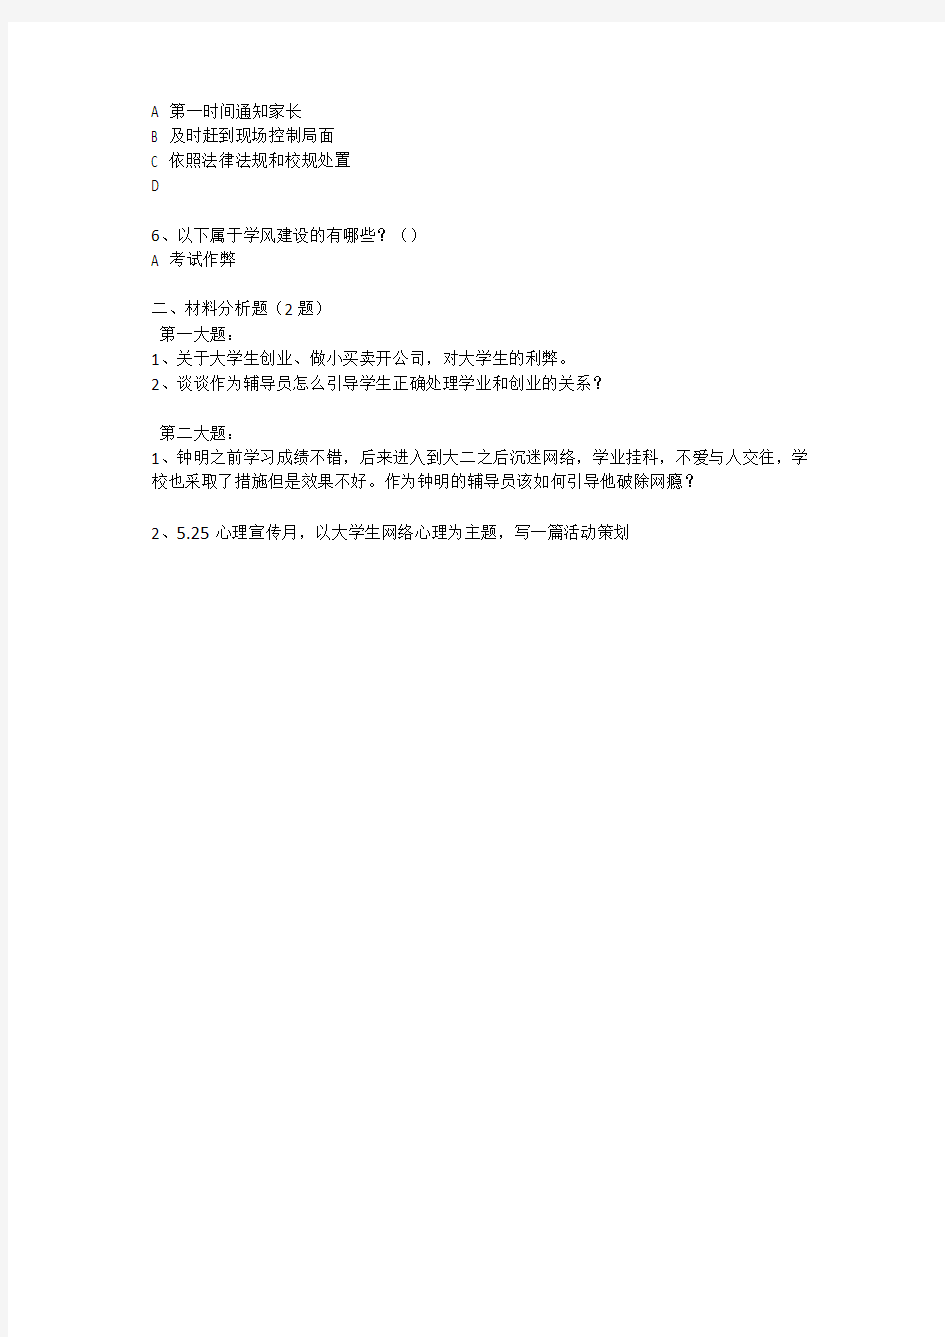 2015年12月江苏省下半年省直事业单位考试辅导员岗真题.pdf